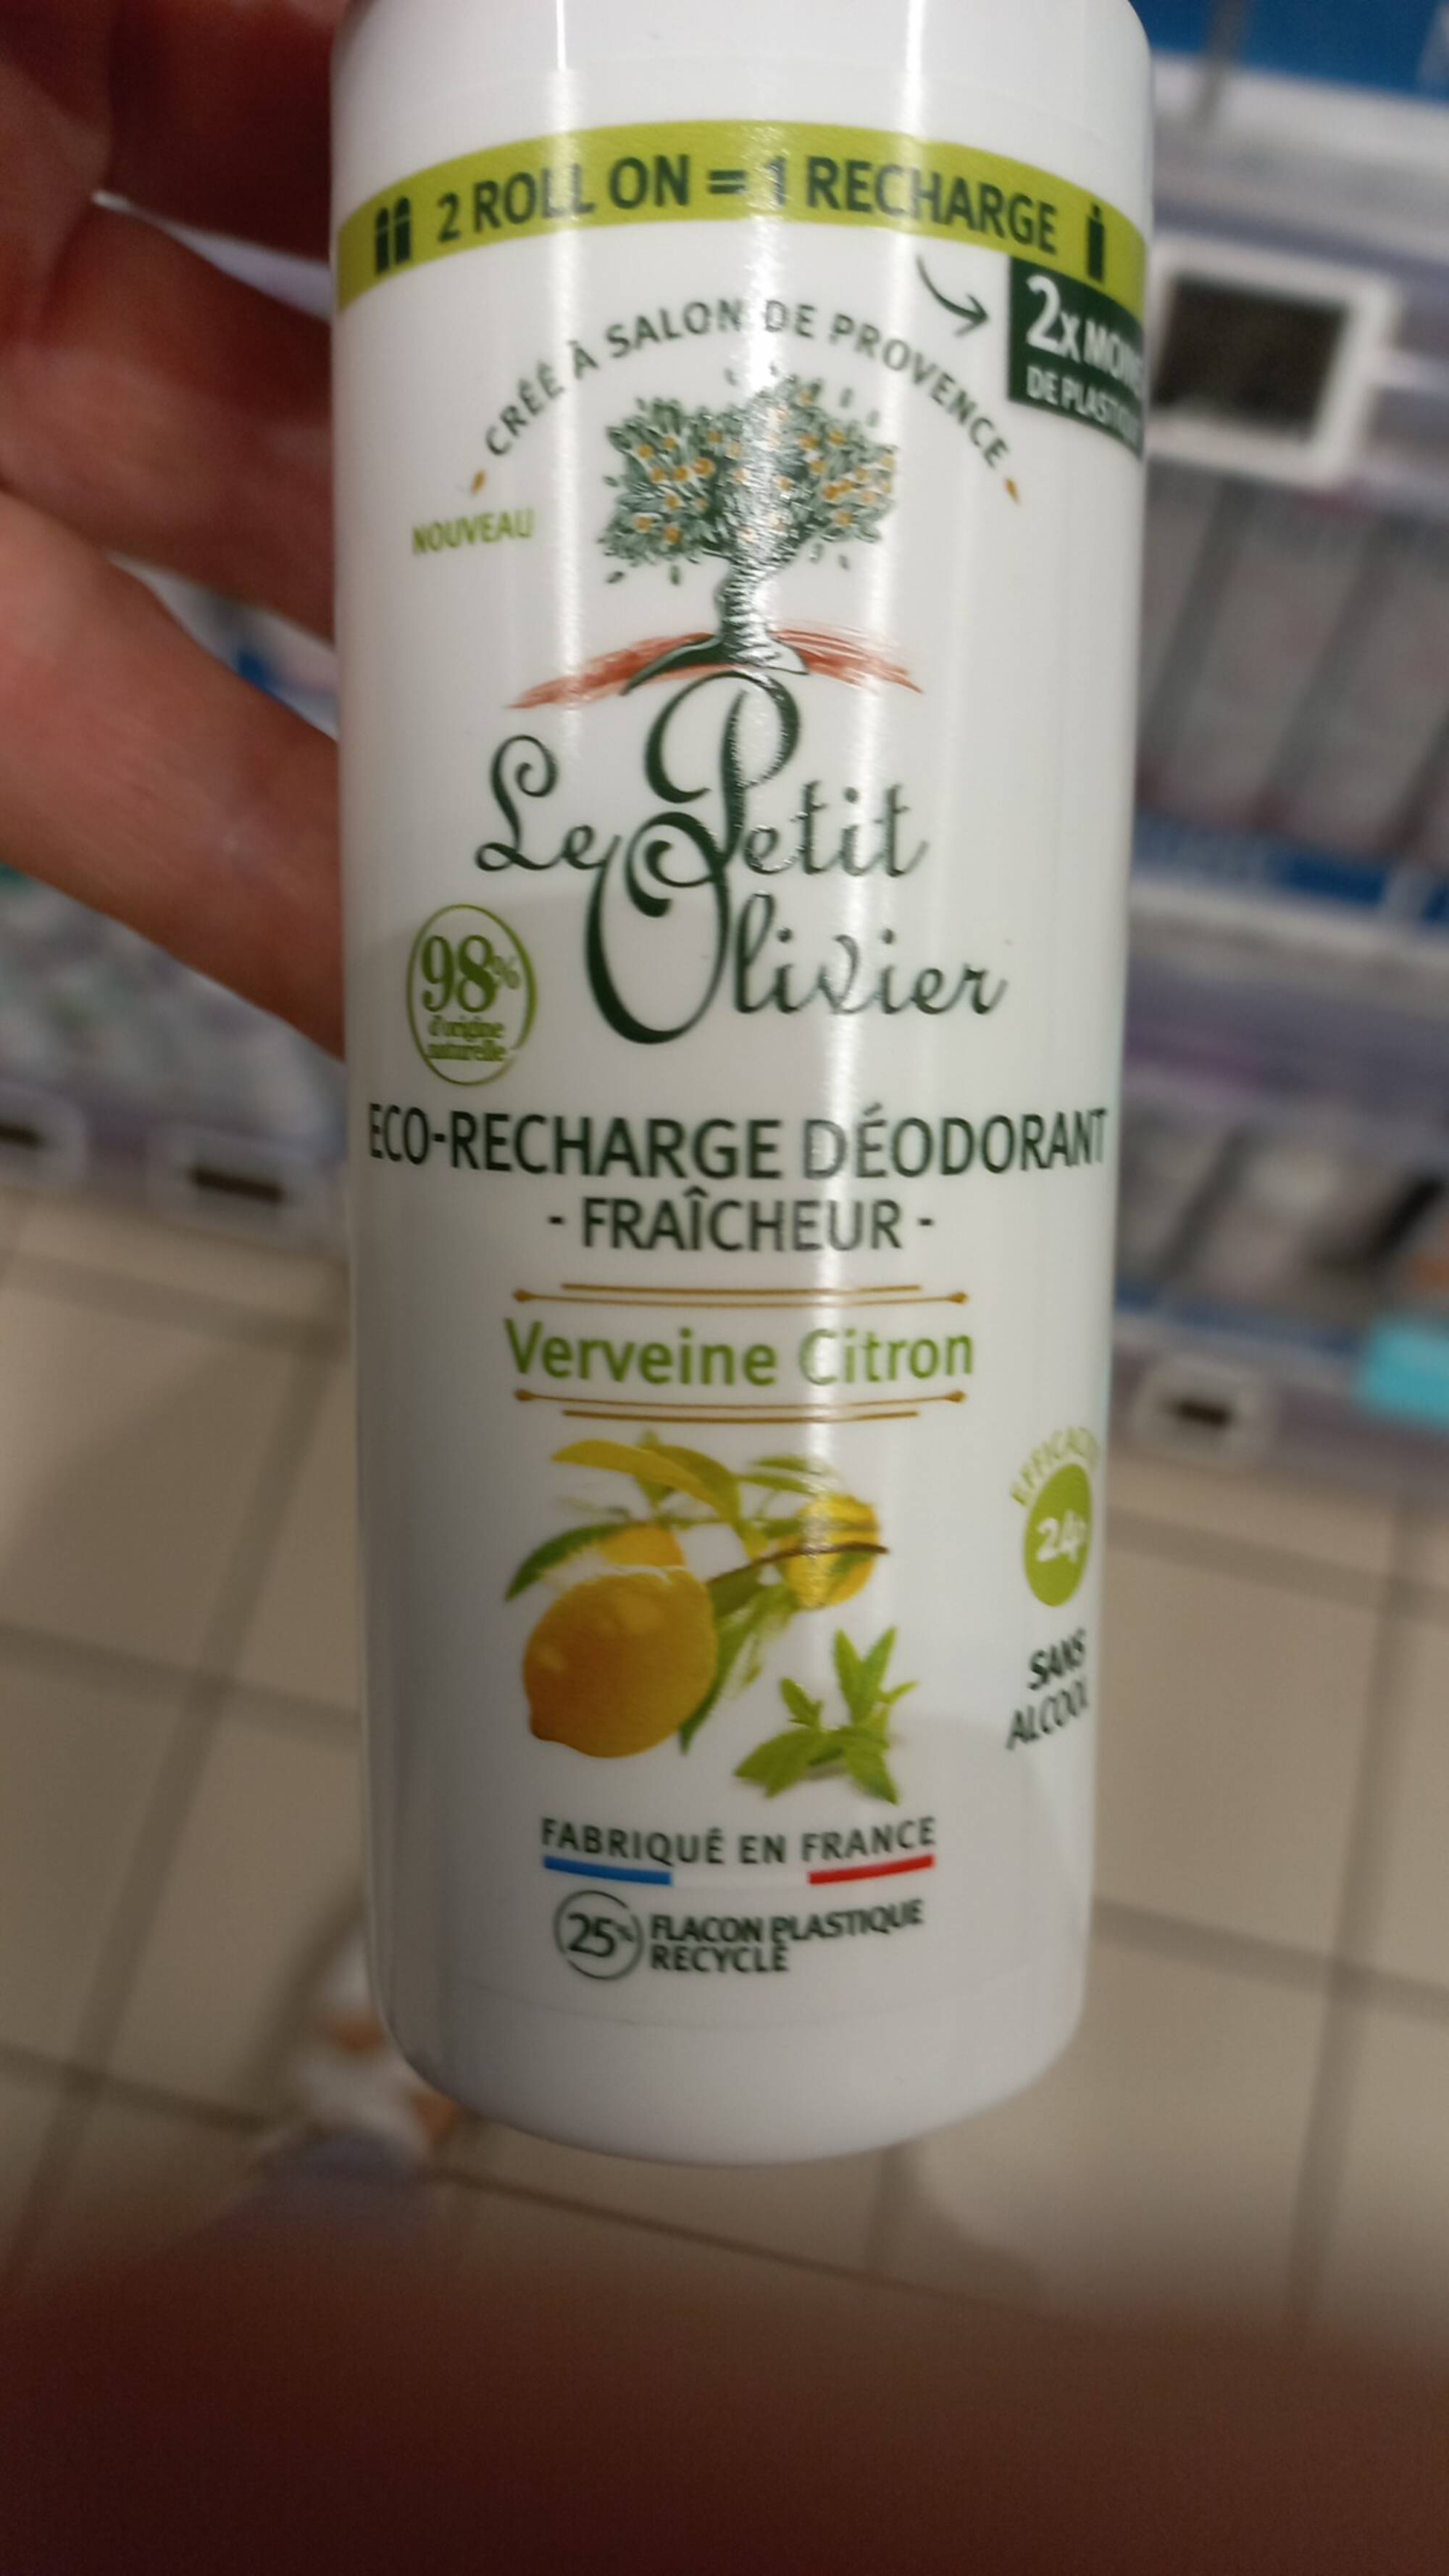 LE PETIT OLIVIER - Verveine citron - Déodorant fraîcheur